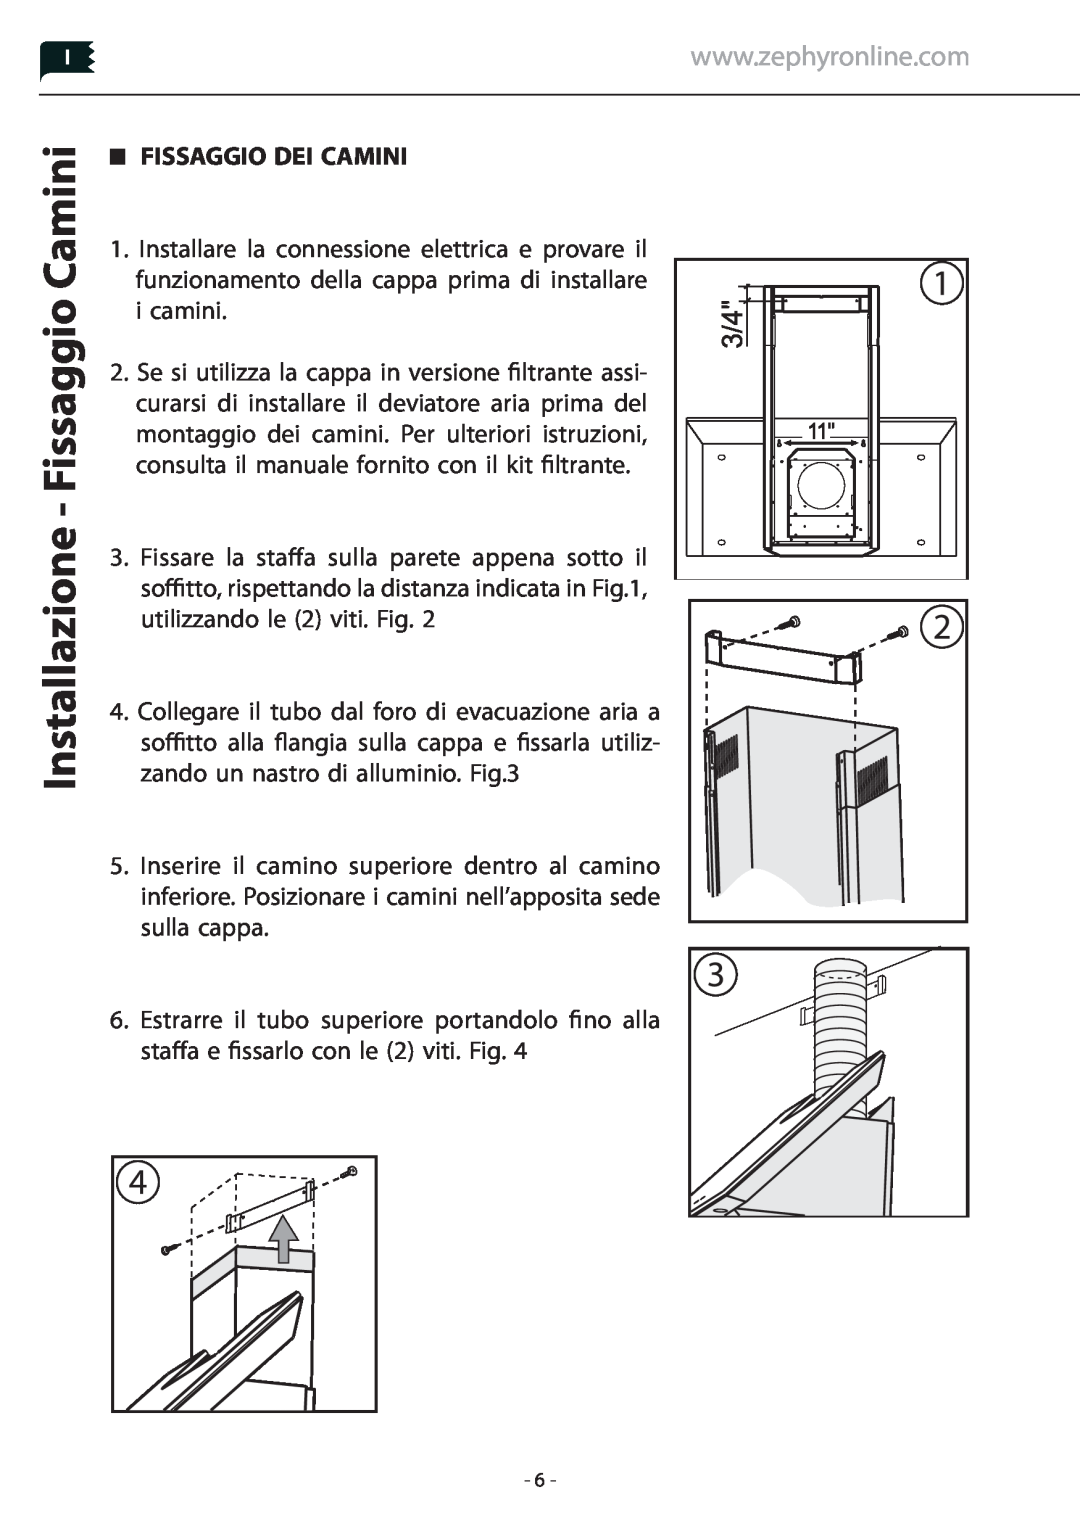 Zephyr Z1C-00PN manual Installazione - Fissaggio Camini, Fissaggio Dei Camini 